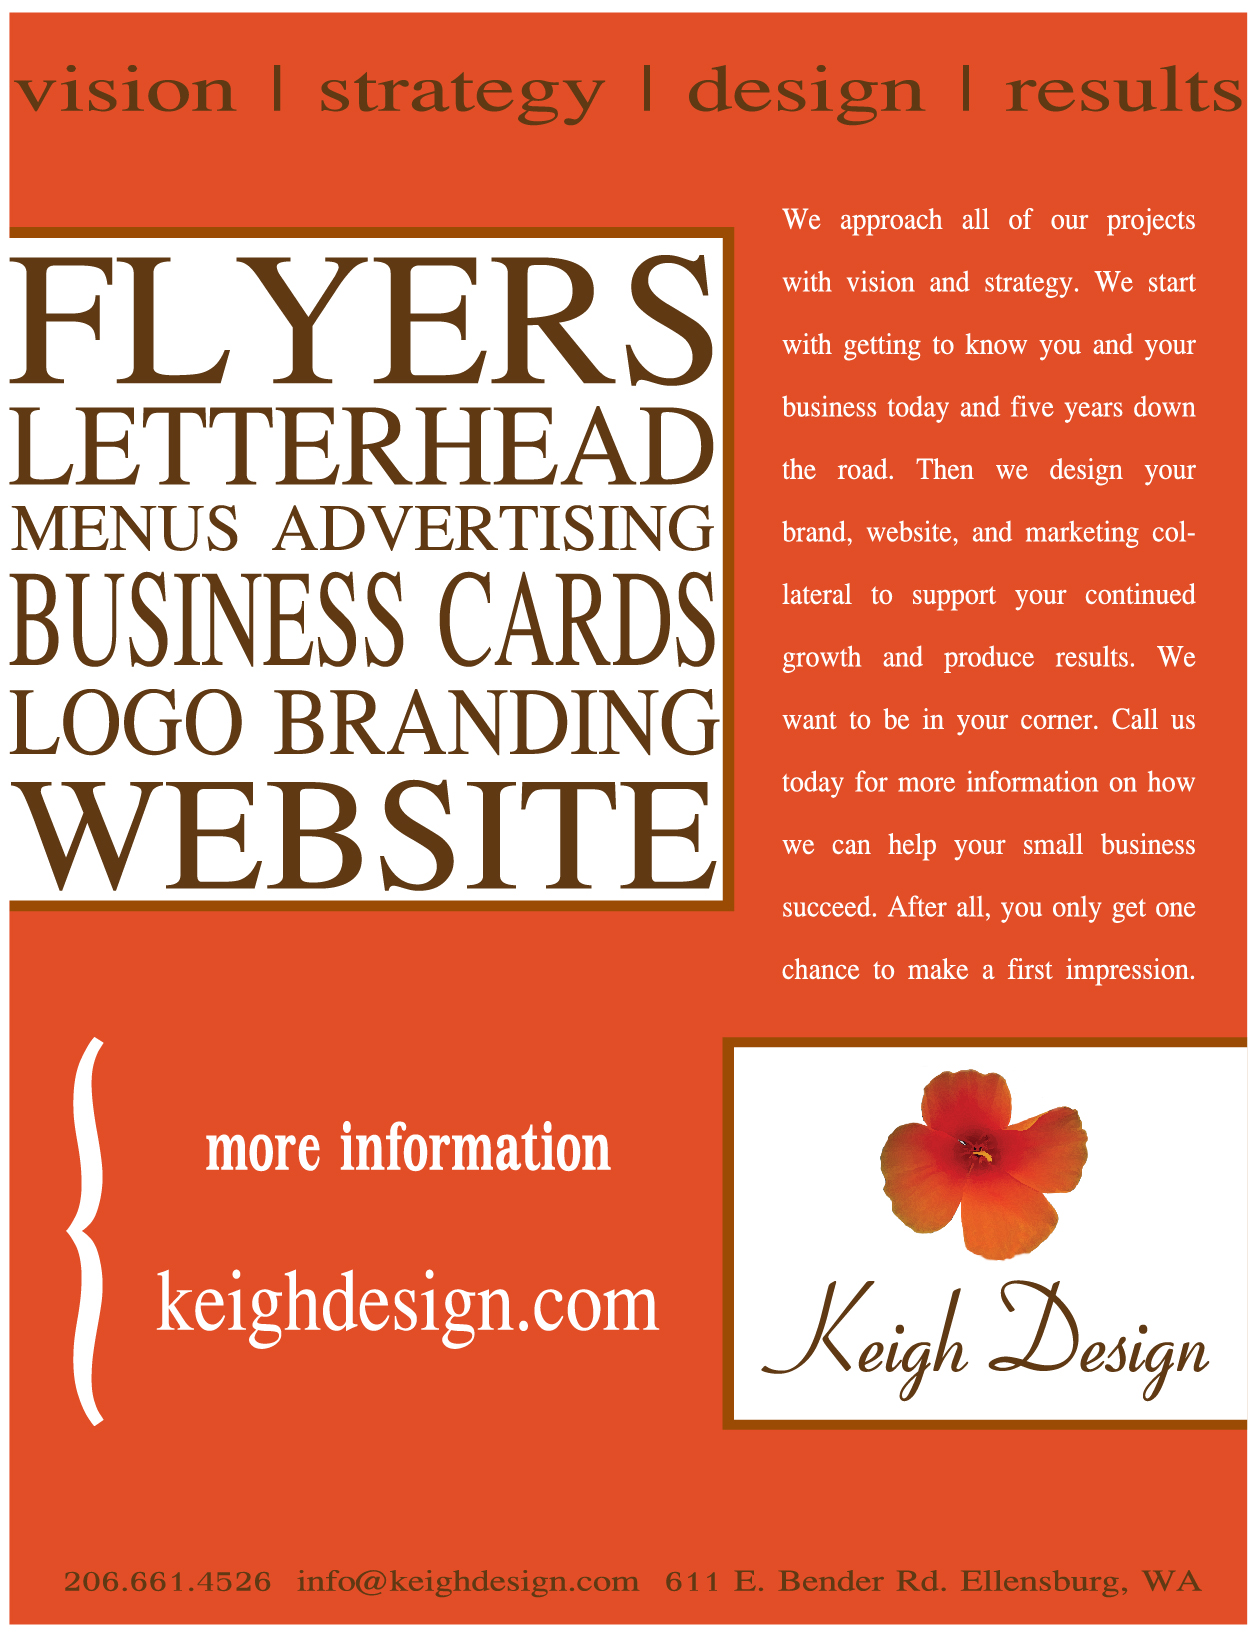 Graphic Design Flyer